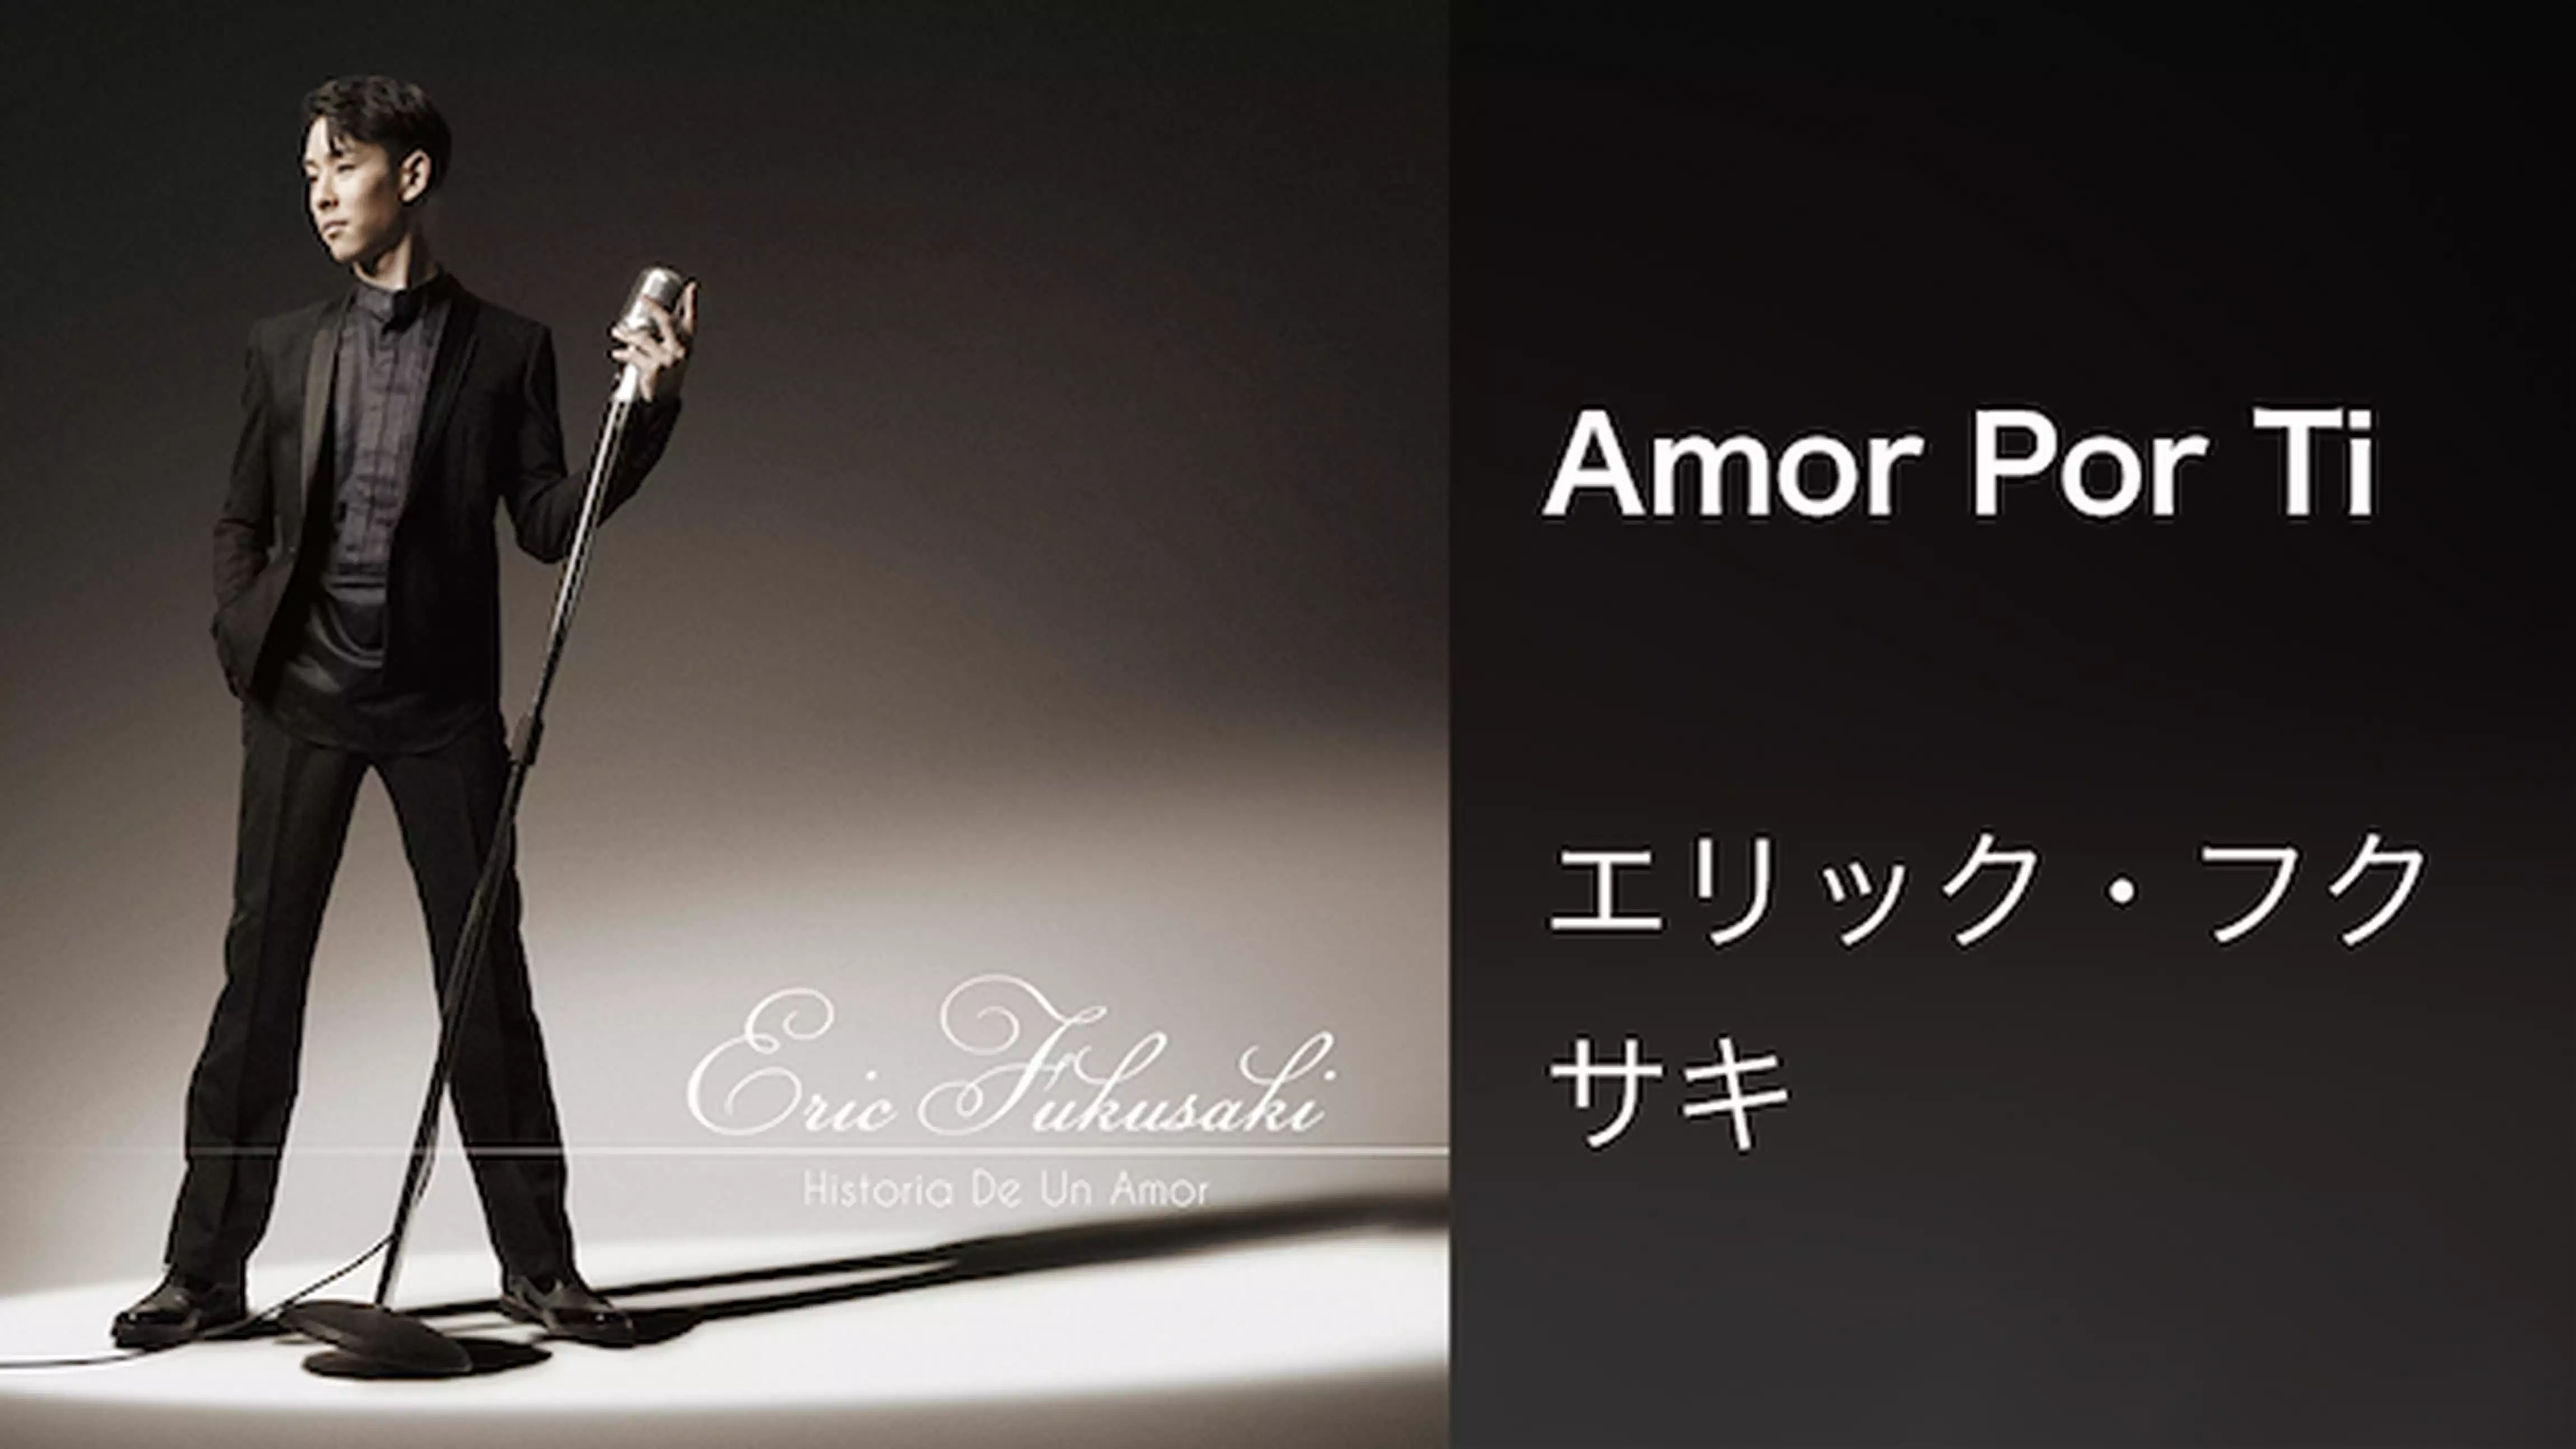 エリック・フクサキ『Amor Por Ti』(Music Video)